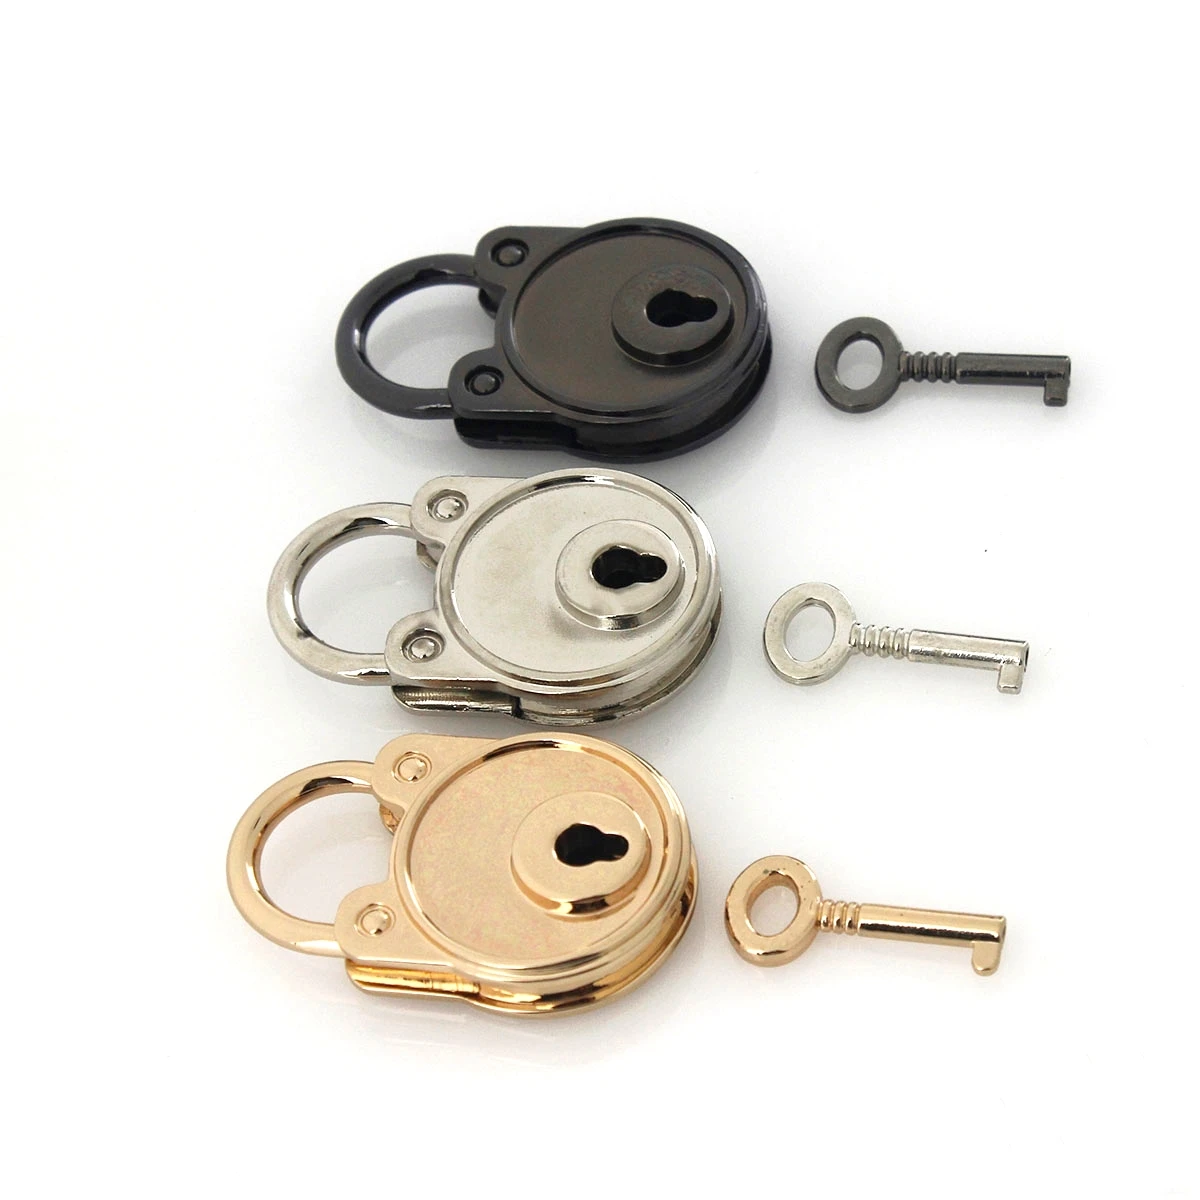 1 stücke Metall Mode Schöne Lock Vintage Mini Vorhängeschloss Tasche Koffer Gepäck Box Key Lock Mit Schlüssel DIY Hardware Zubehör